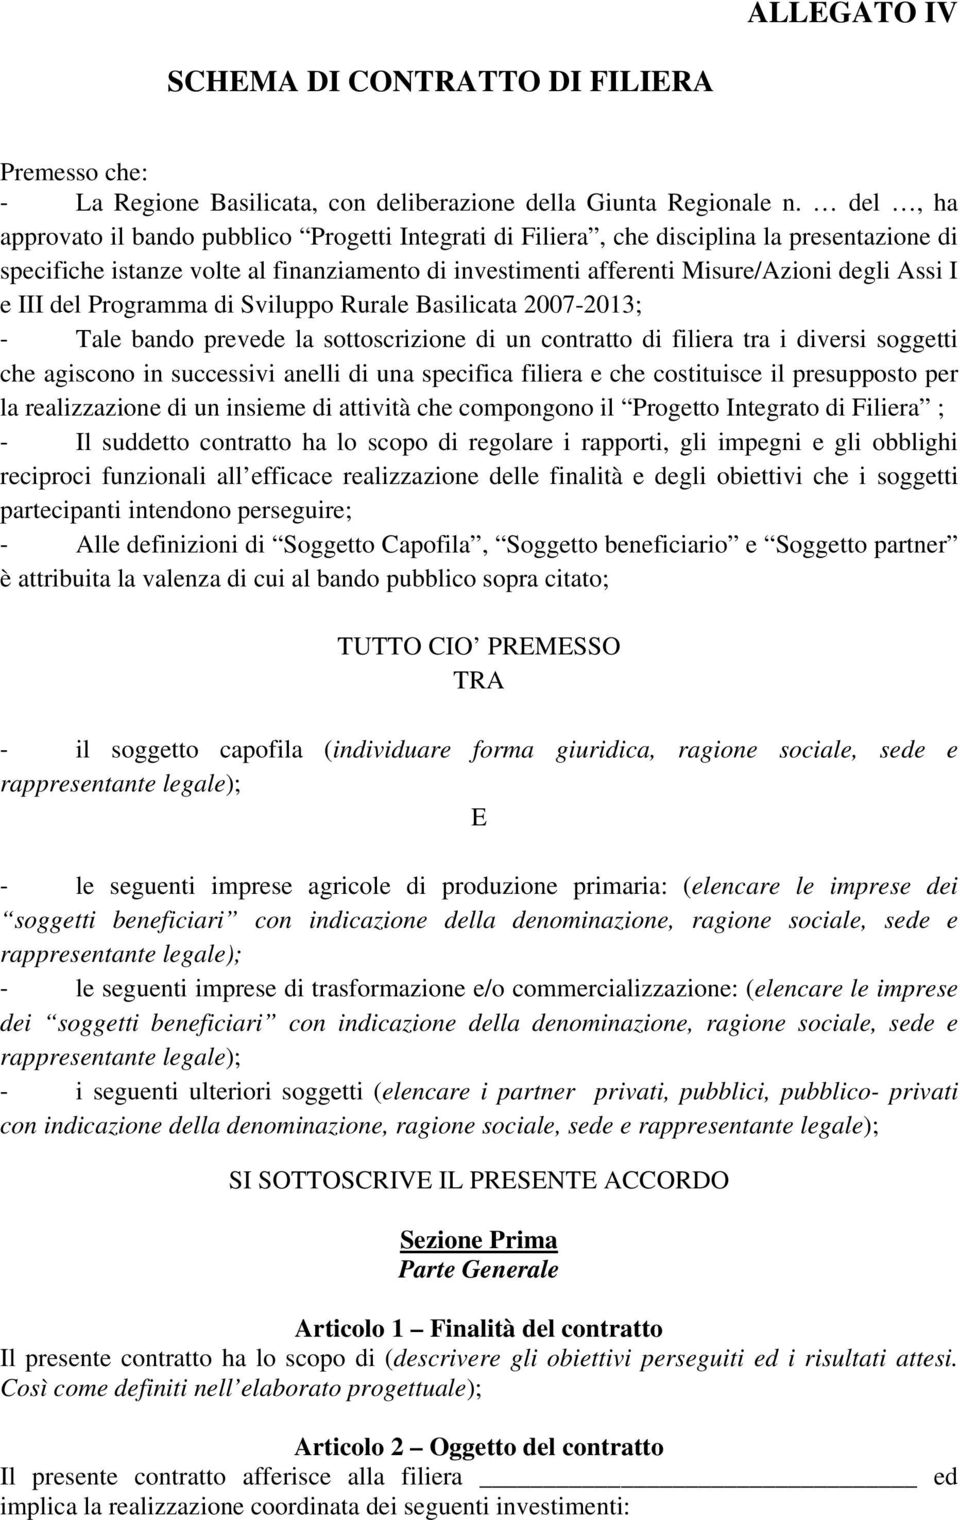 III del Programma di Sviluppo Rurale Basilicata 2007-2013; Tale bando prevede la sottoscrizione di un contratto di filiera tra i diversi soggetti che agiscono in successivi anelli di una specifica